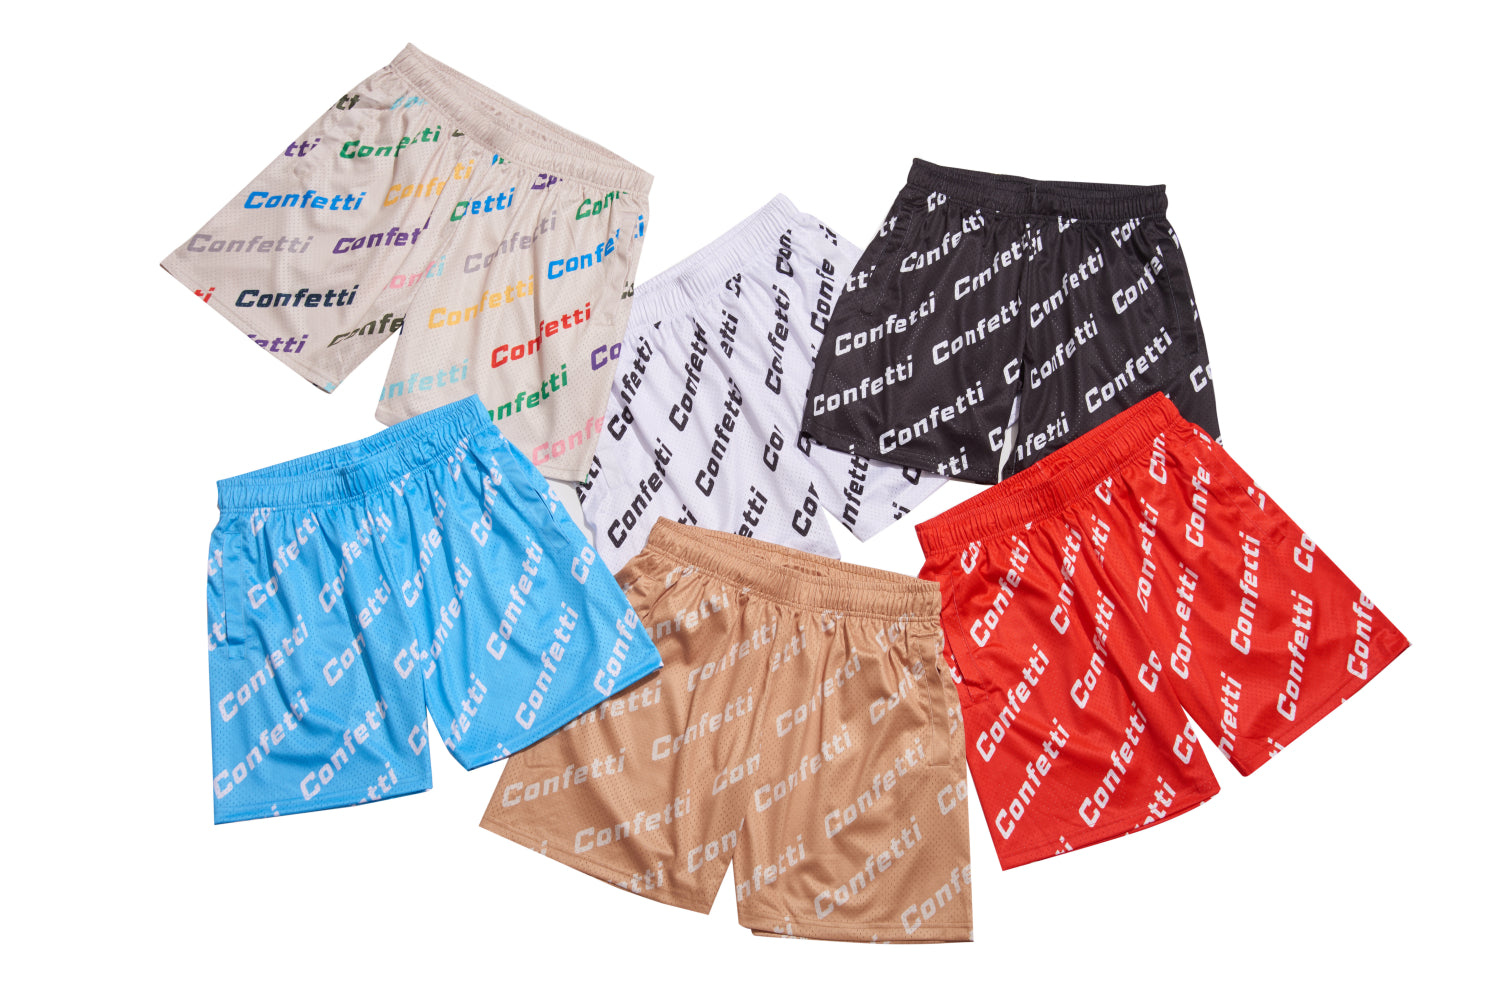 Confetti BasketBall Shorts – Confetti Boutique